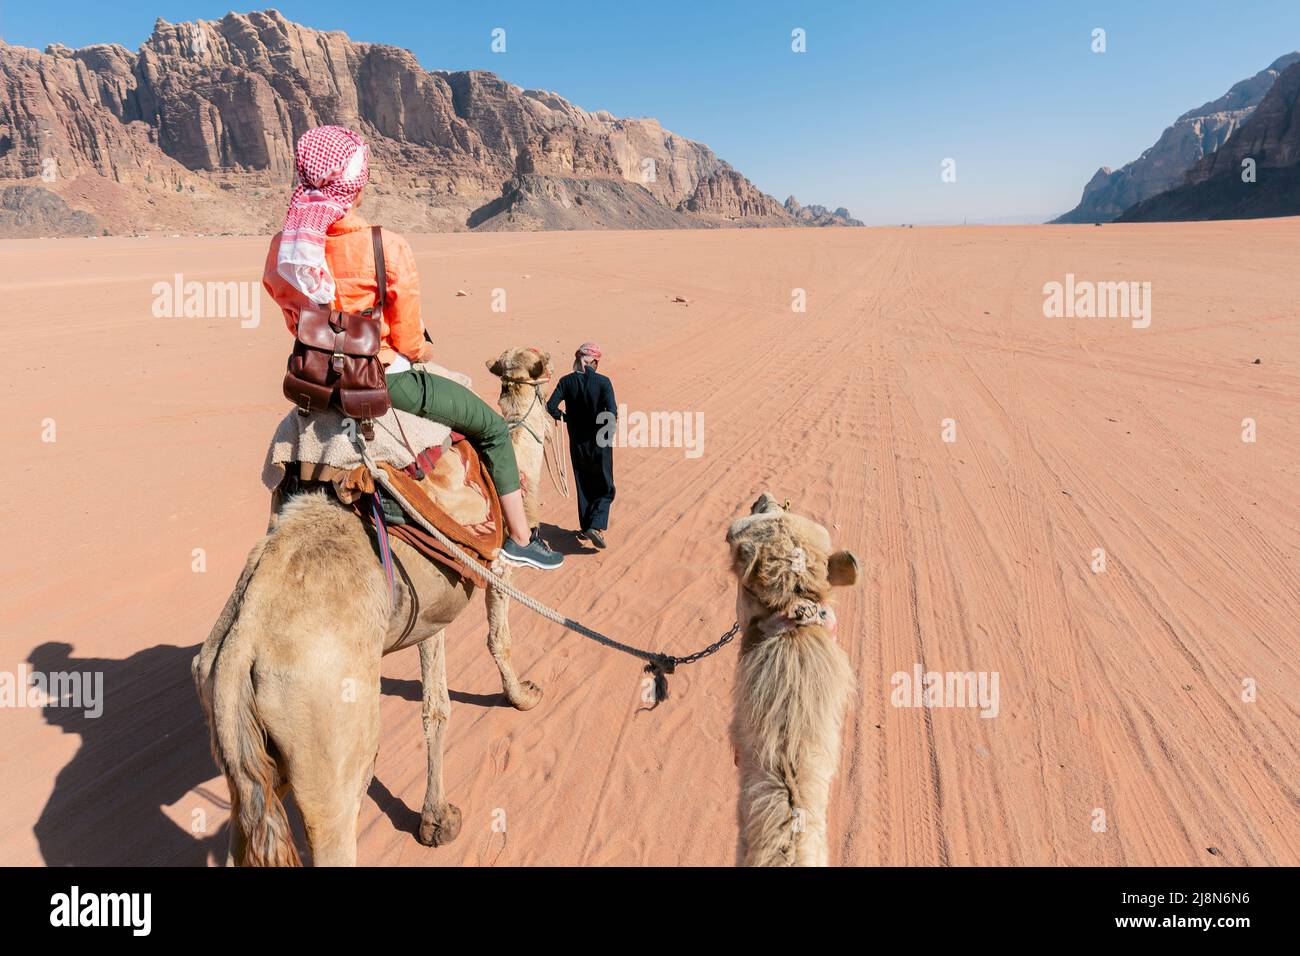 Belle jeune femme touriste en robe blanche à cheval sur chameau dans le désert de rhum wadi, Jordanie Banque D'Images